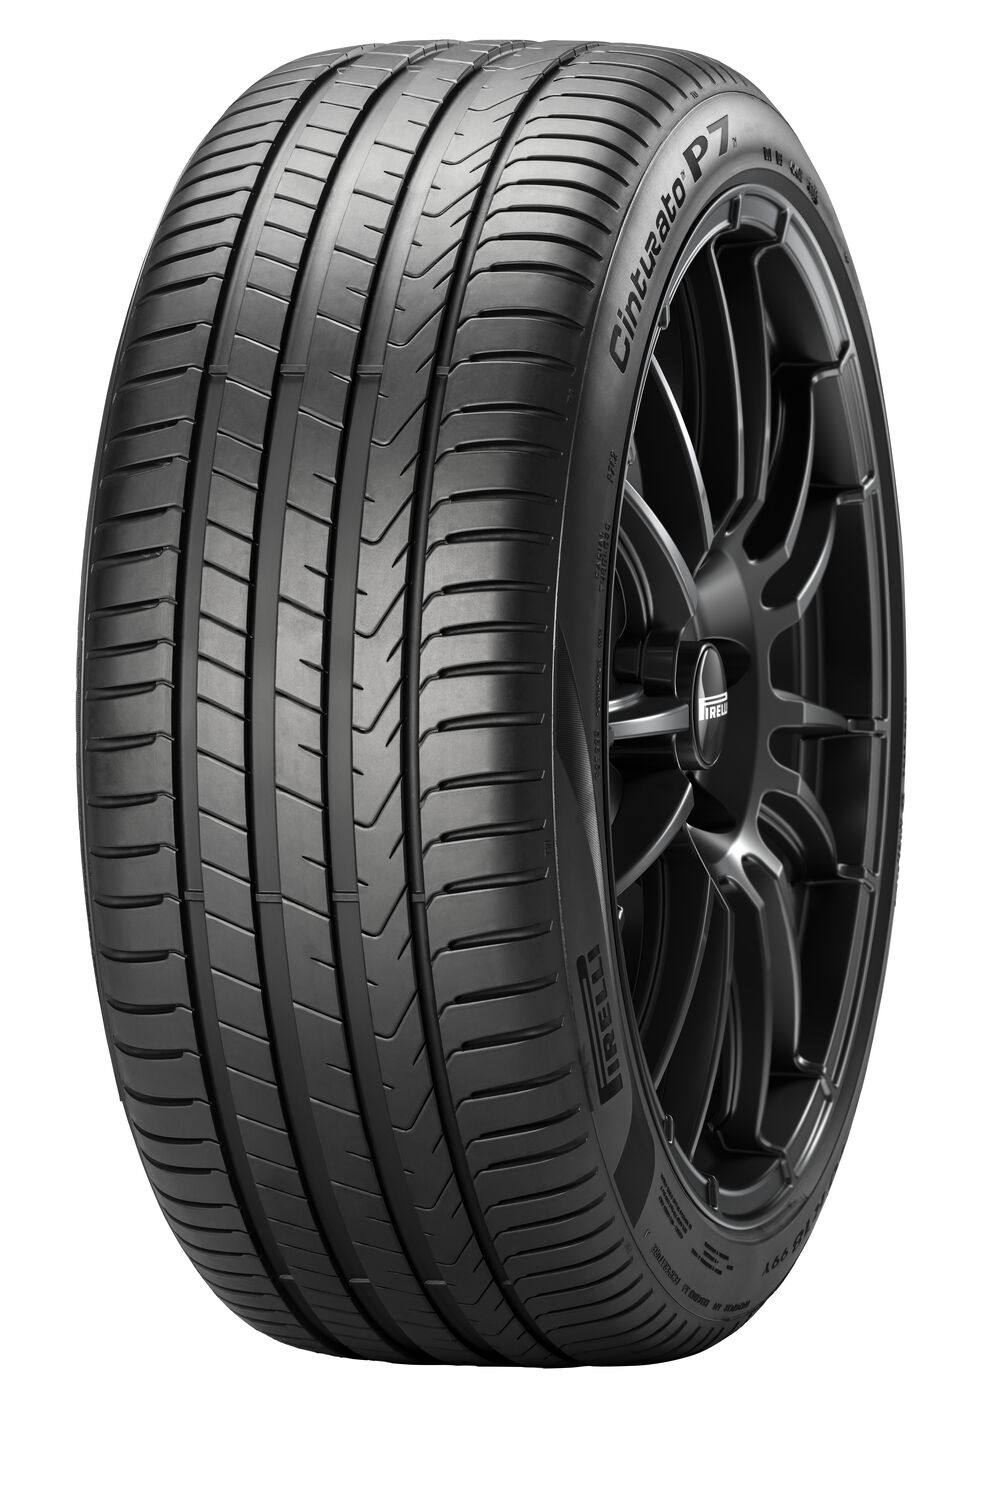 Gomme Nuove Pirelli 205/55 R16 91V P7 CINTURATO P7C2 pneumatici nuovi Estivo